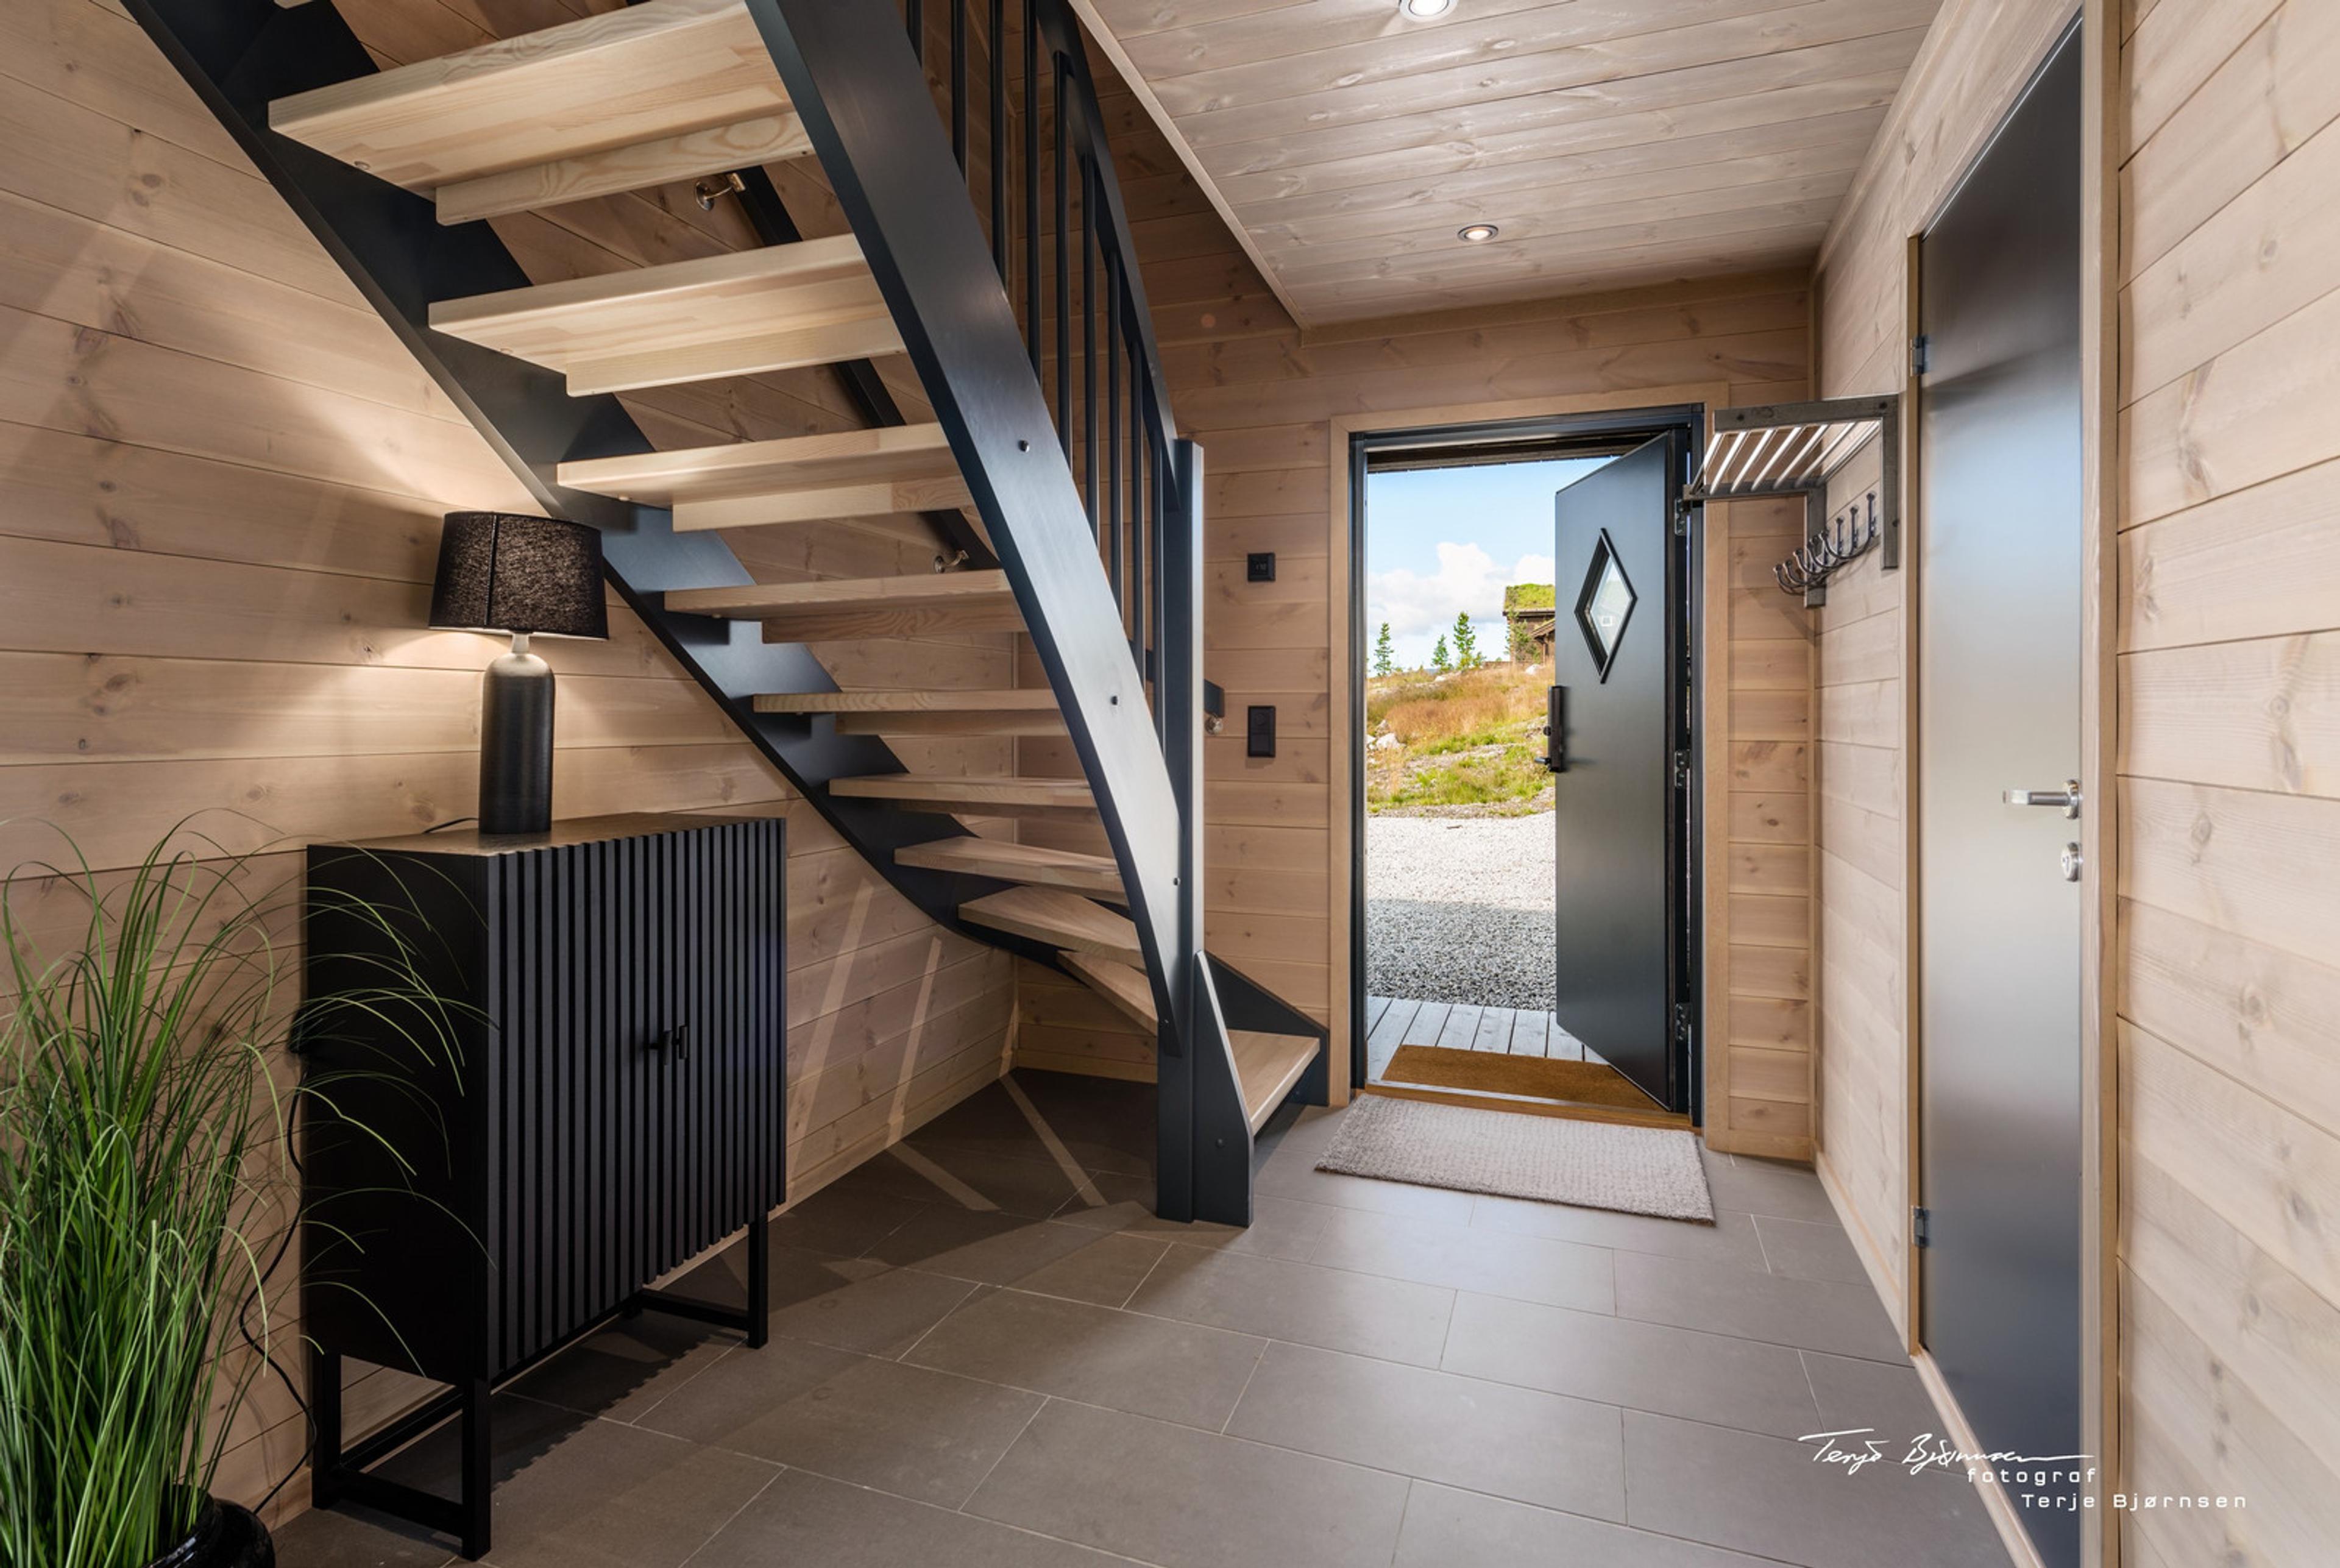 Turufjell - Hallingdal Innflytningsklar, møblert moderne hytte med SKI IN/OUT